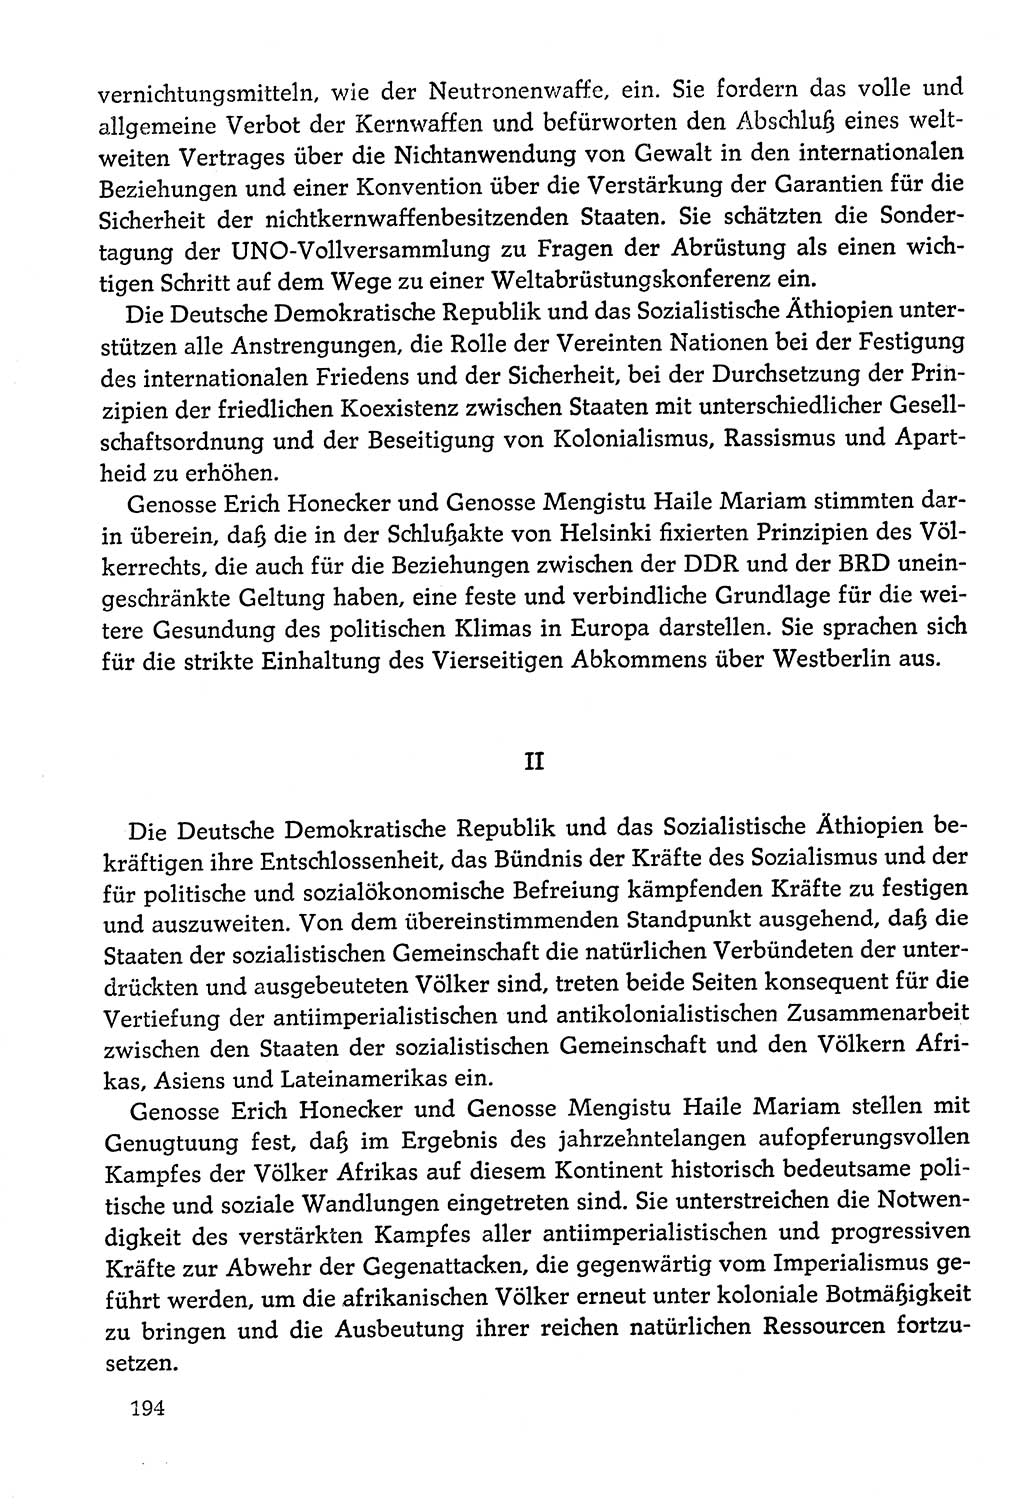 Dokumente der Sozialistischen Einheitspartei Deutschlands (SED) [Deutsche Demokratische Republik (DDR)] 1978-1979, Seite 194 (Dok. SED DDR 1978-1979, S. 194)